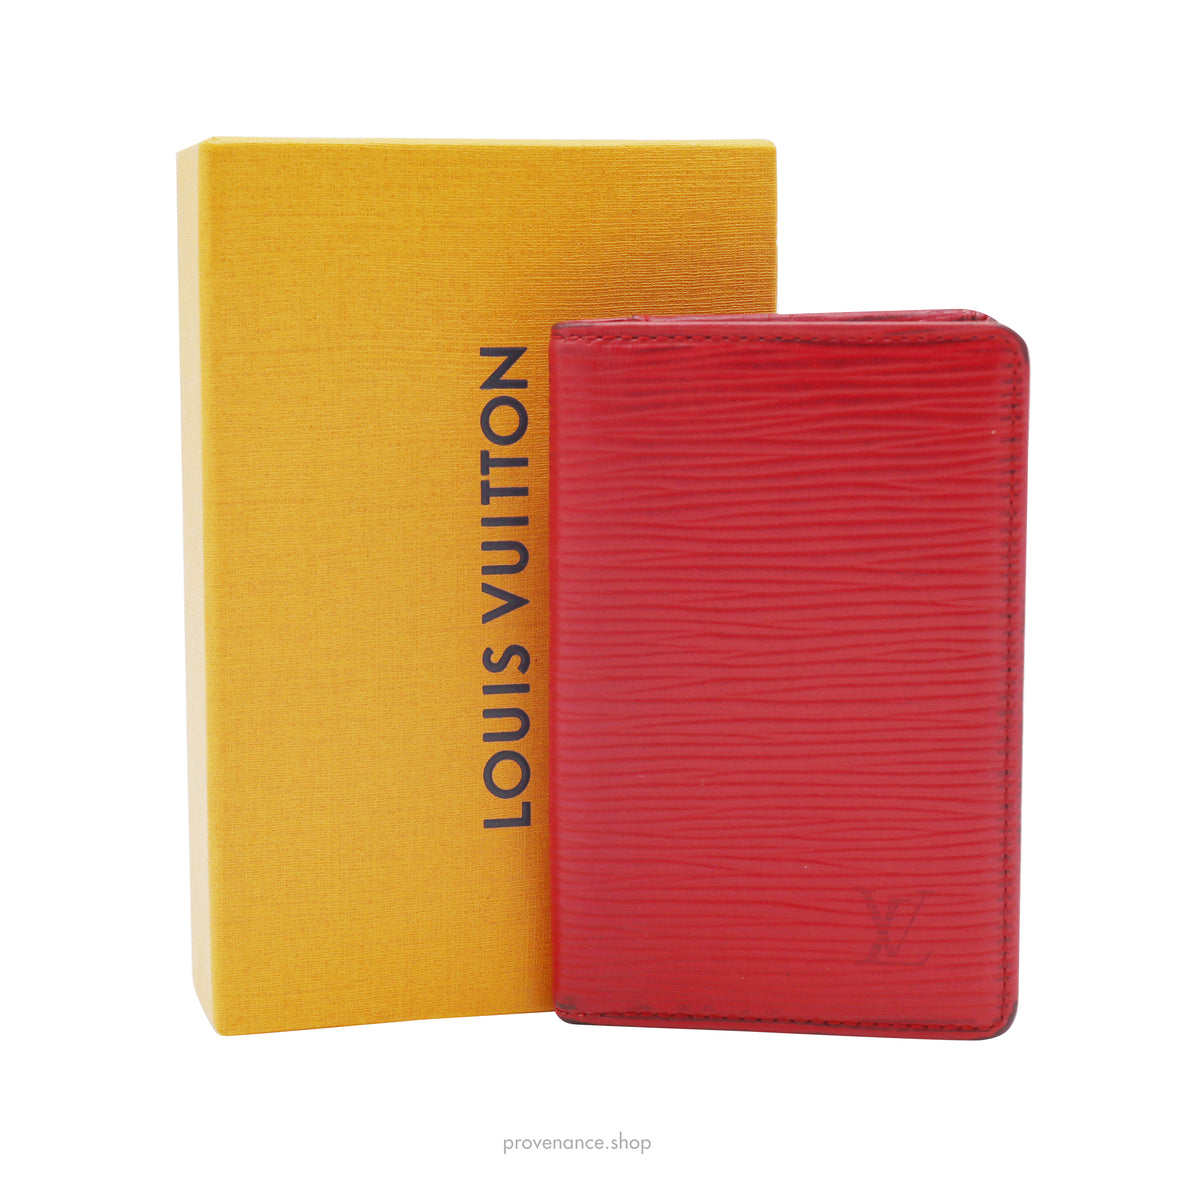 Louis Vuitton Pocket Organizer Epi Leather